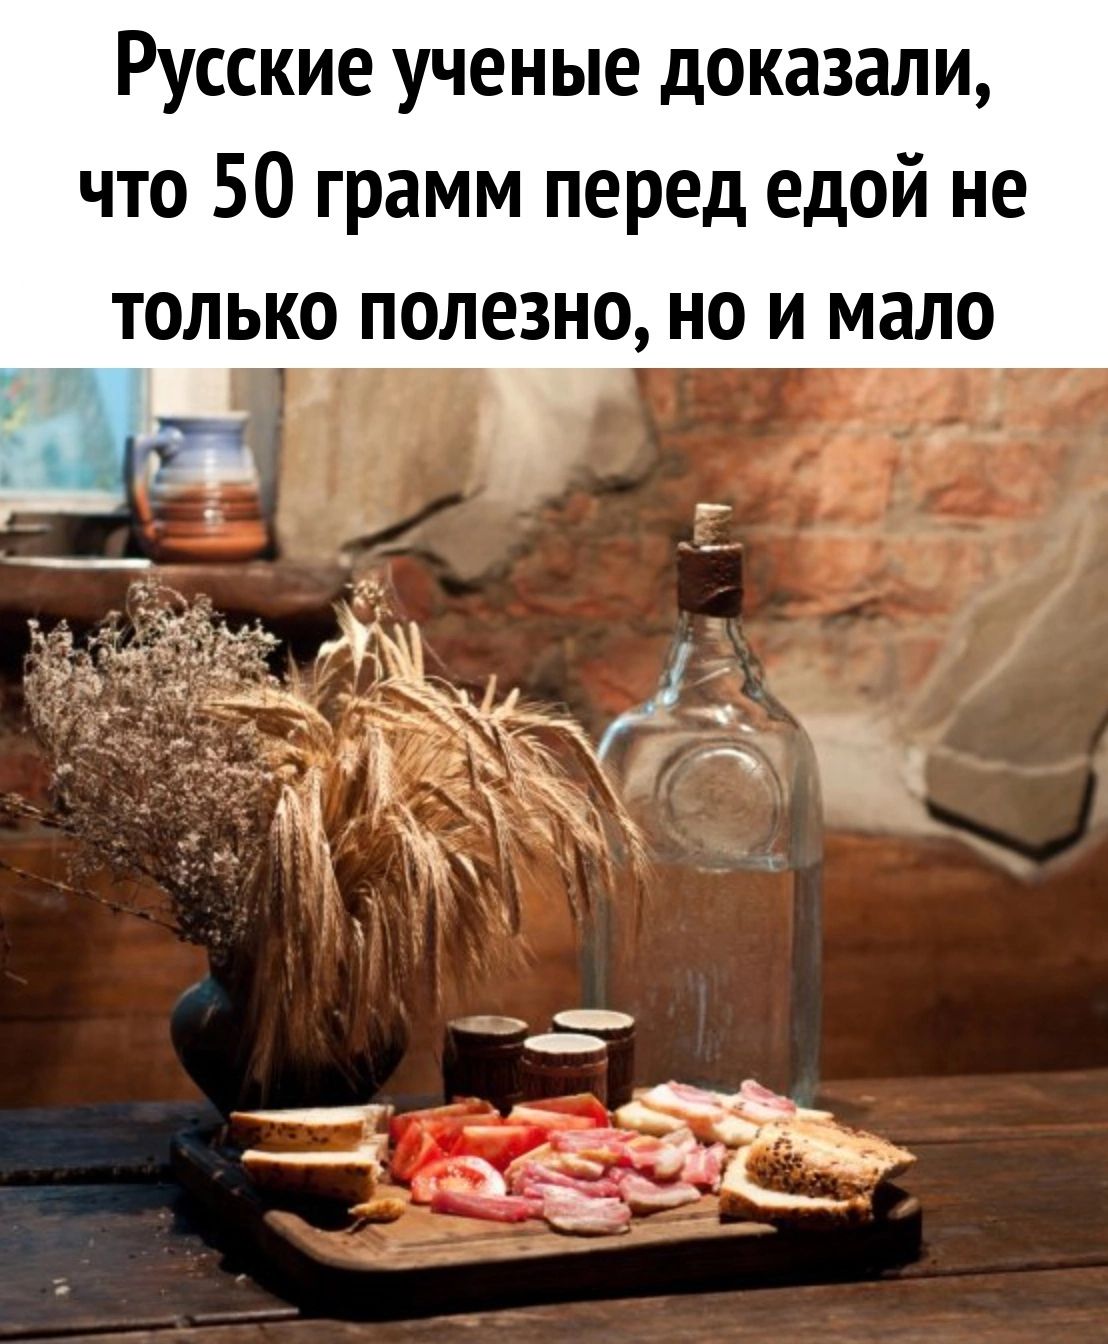 Русские ученые доказали что 50 грамм перед едой не только полезно но и мало